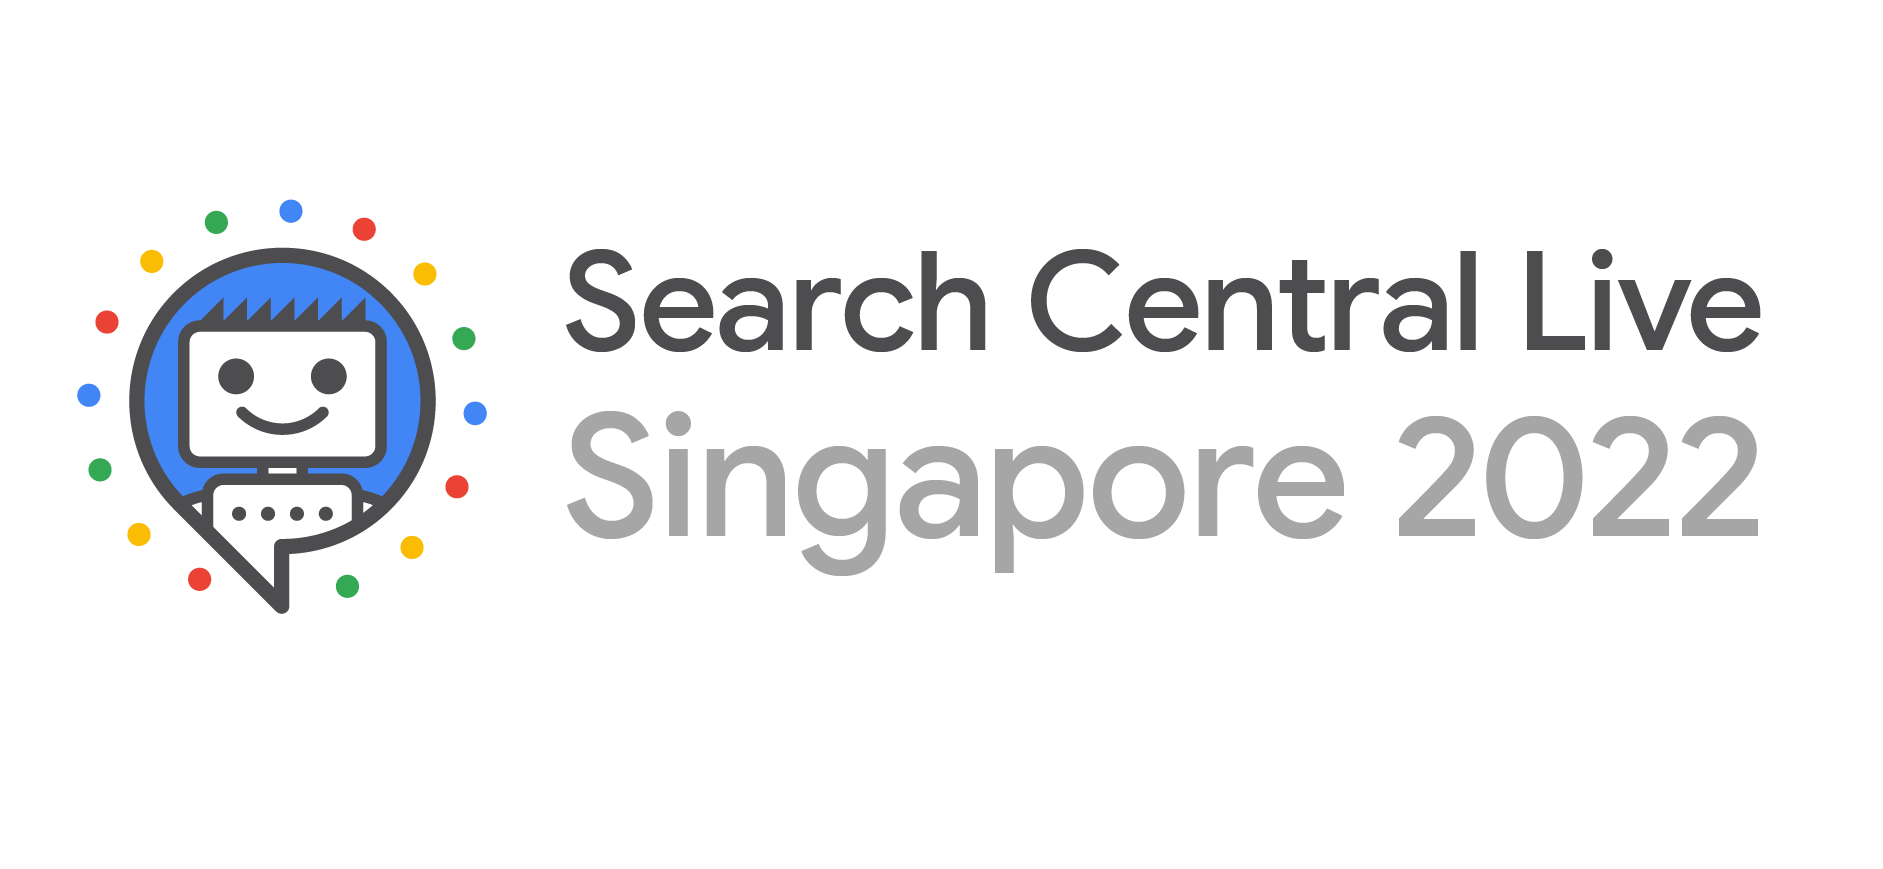 2022 年新加坡 Search Central Live 標誌